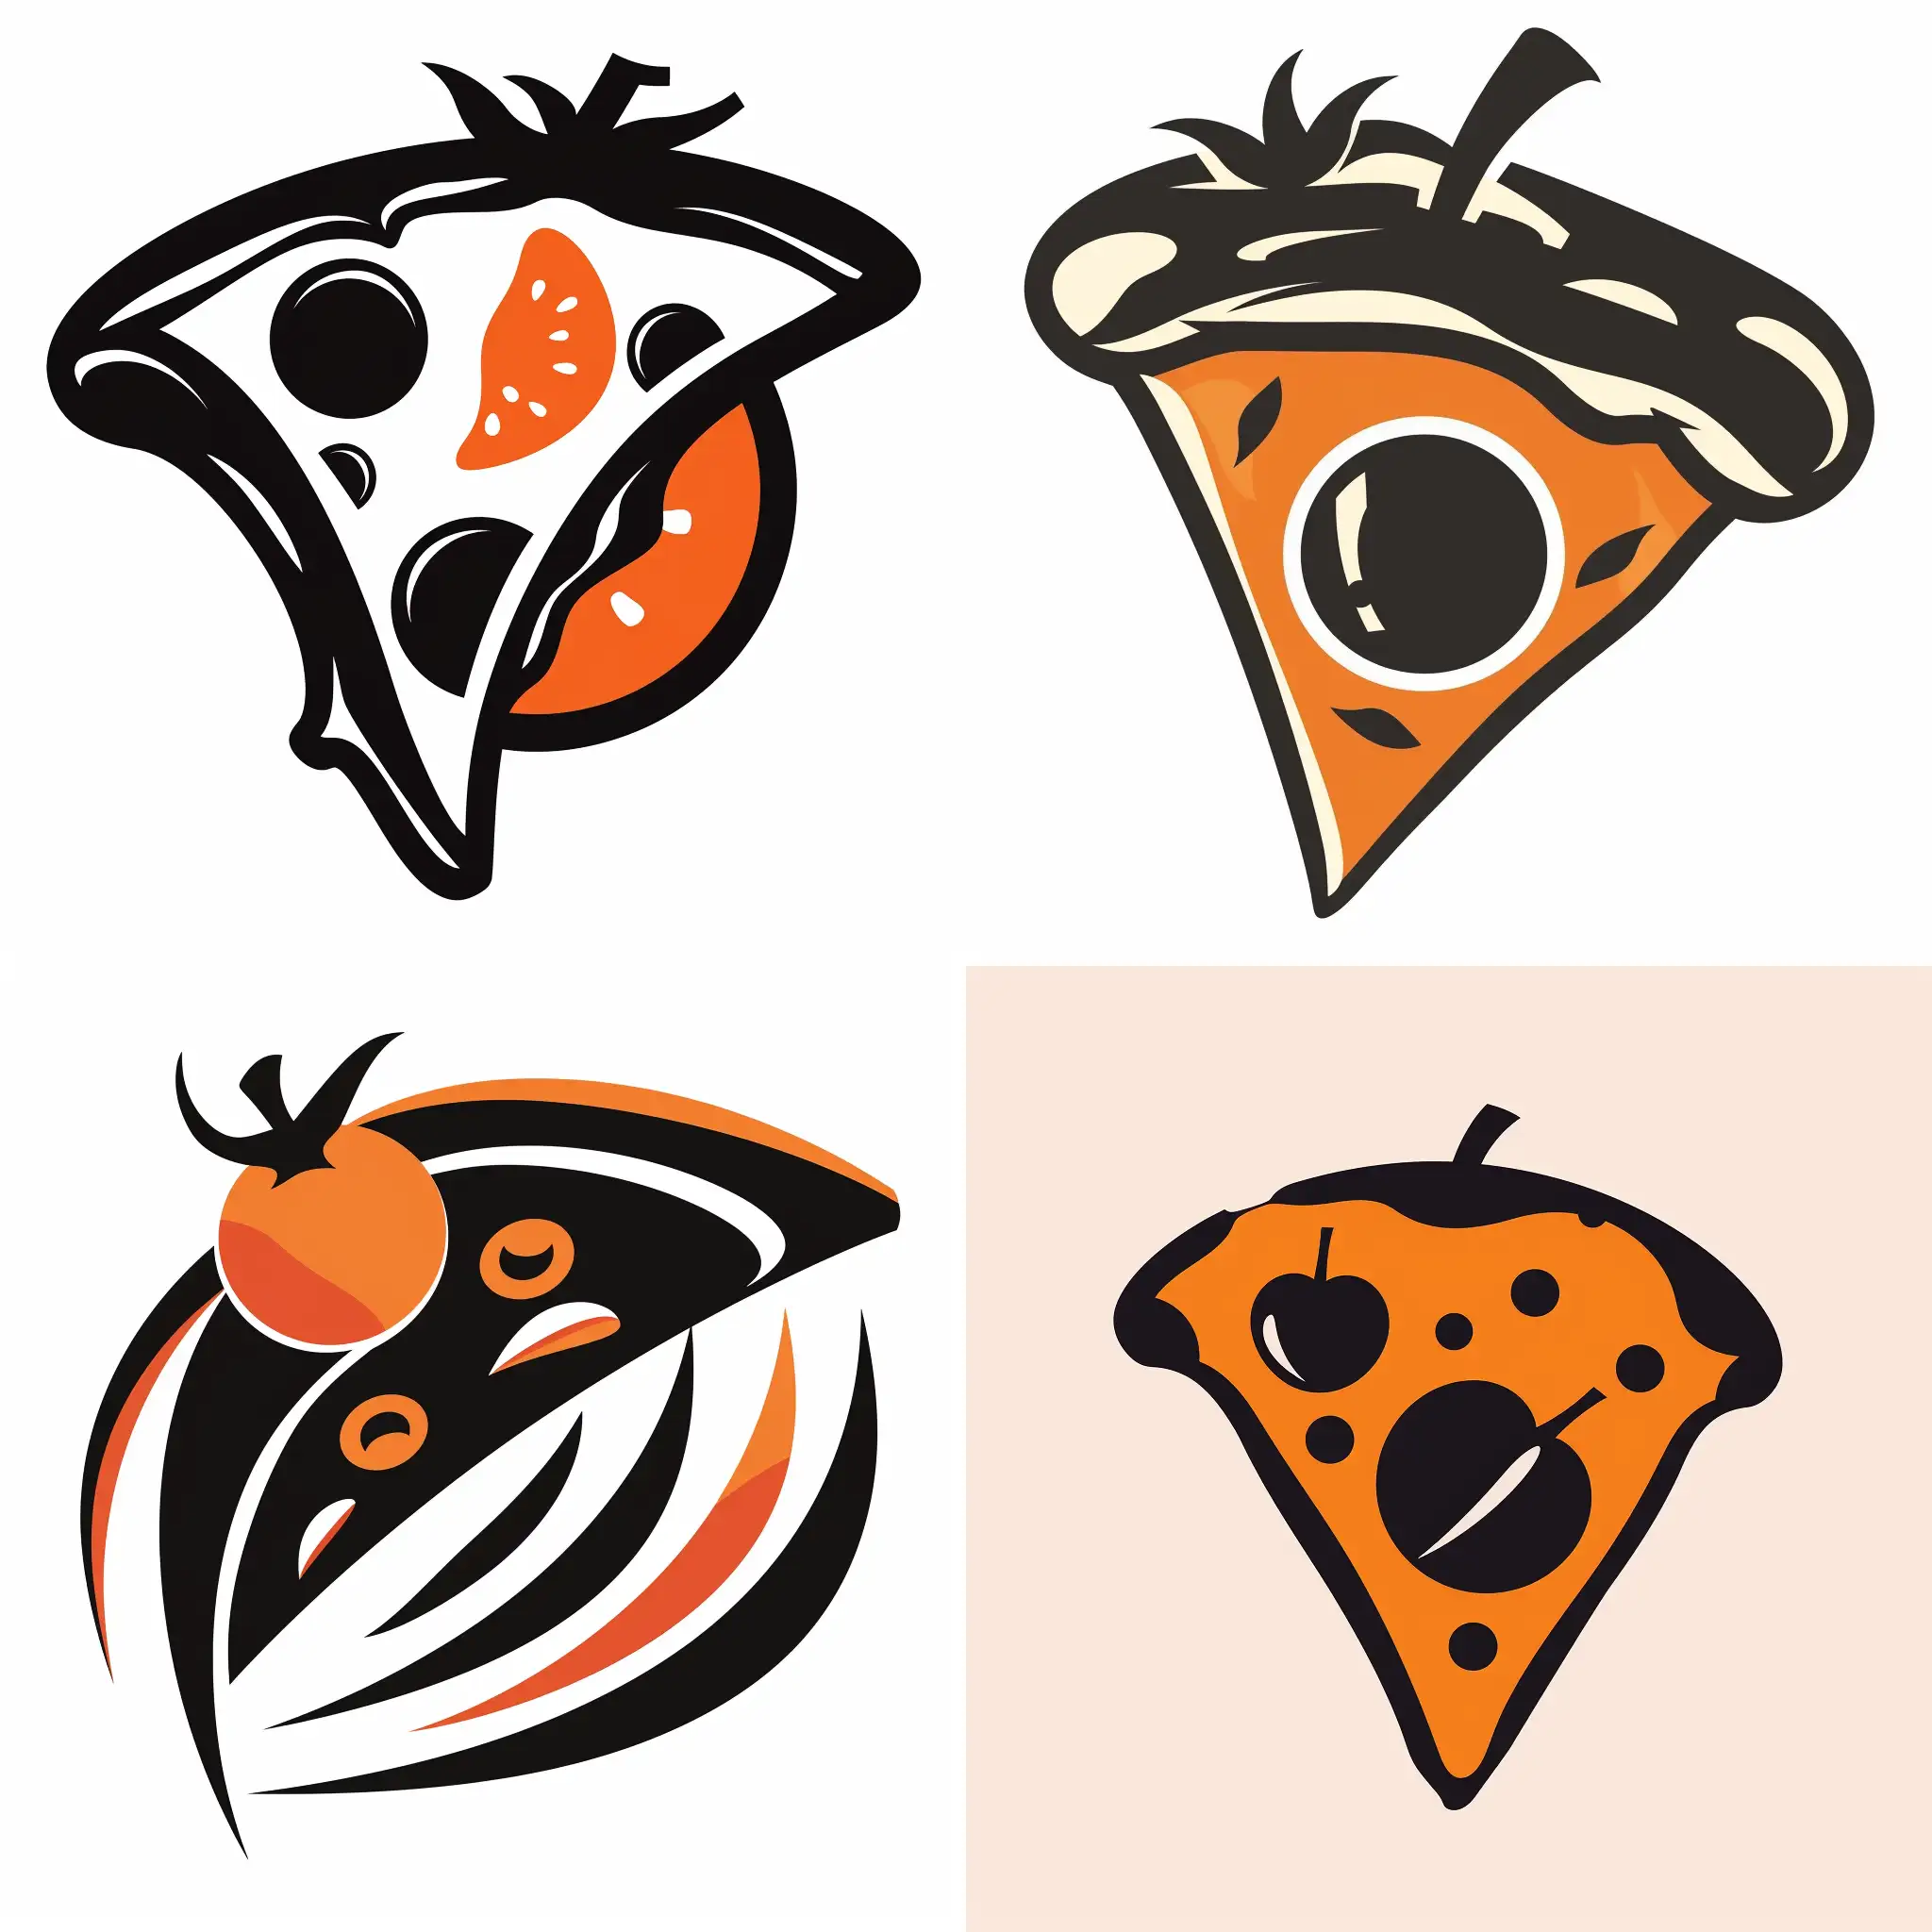 Pizza-Logo-Design-with-Black-and-Orange-Tomato